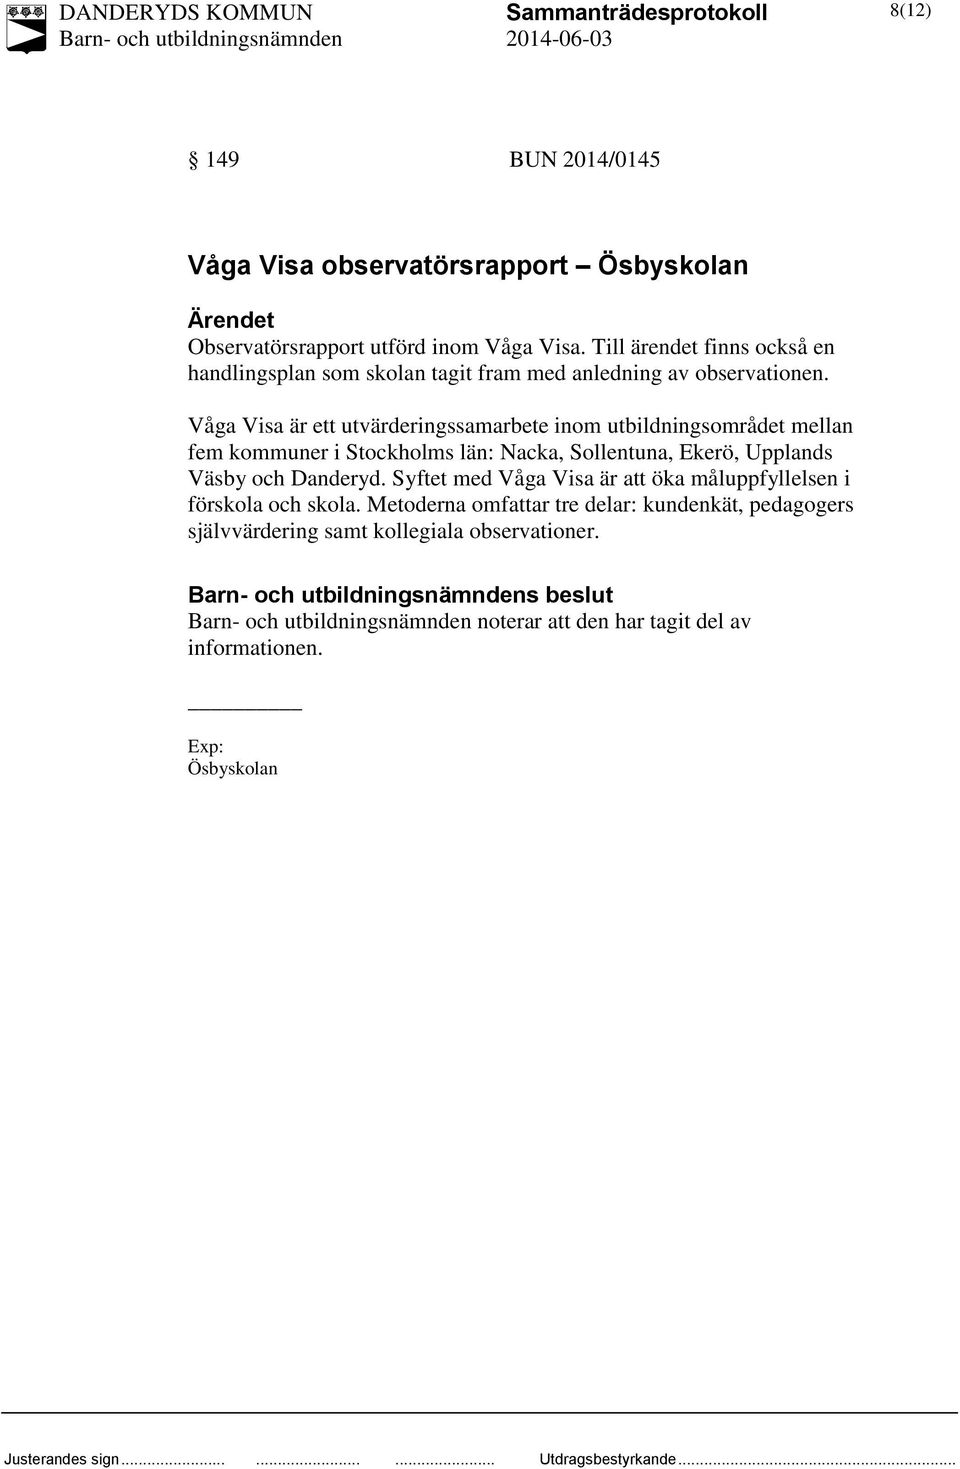 Våga Visa är ett utvärderingssamarbete inom utbildningsområdet mellan fem kommuner i Stockholms län: Nacka, Sollentuna, Ekerö, Upplands Väsby och